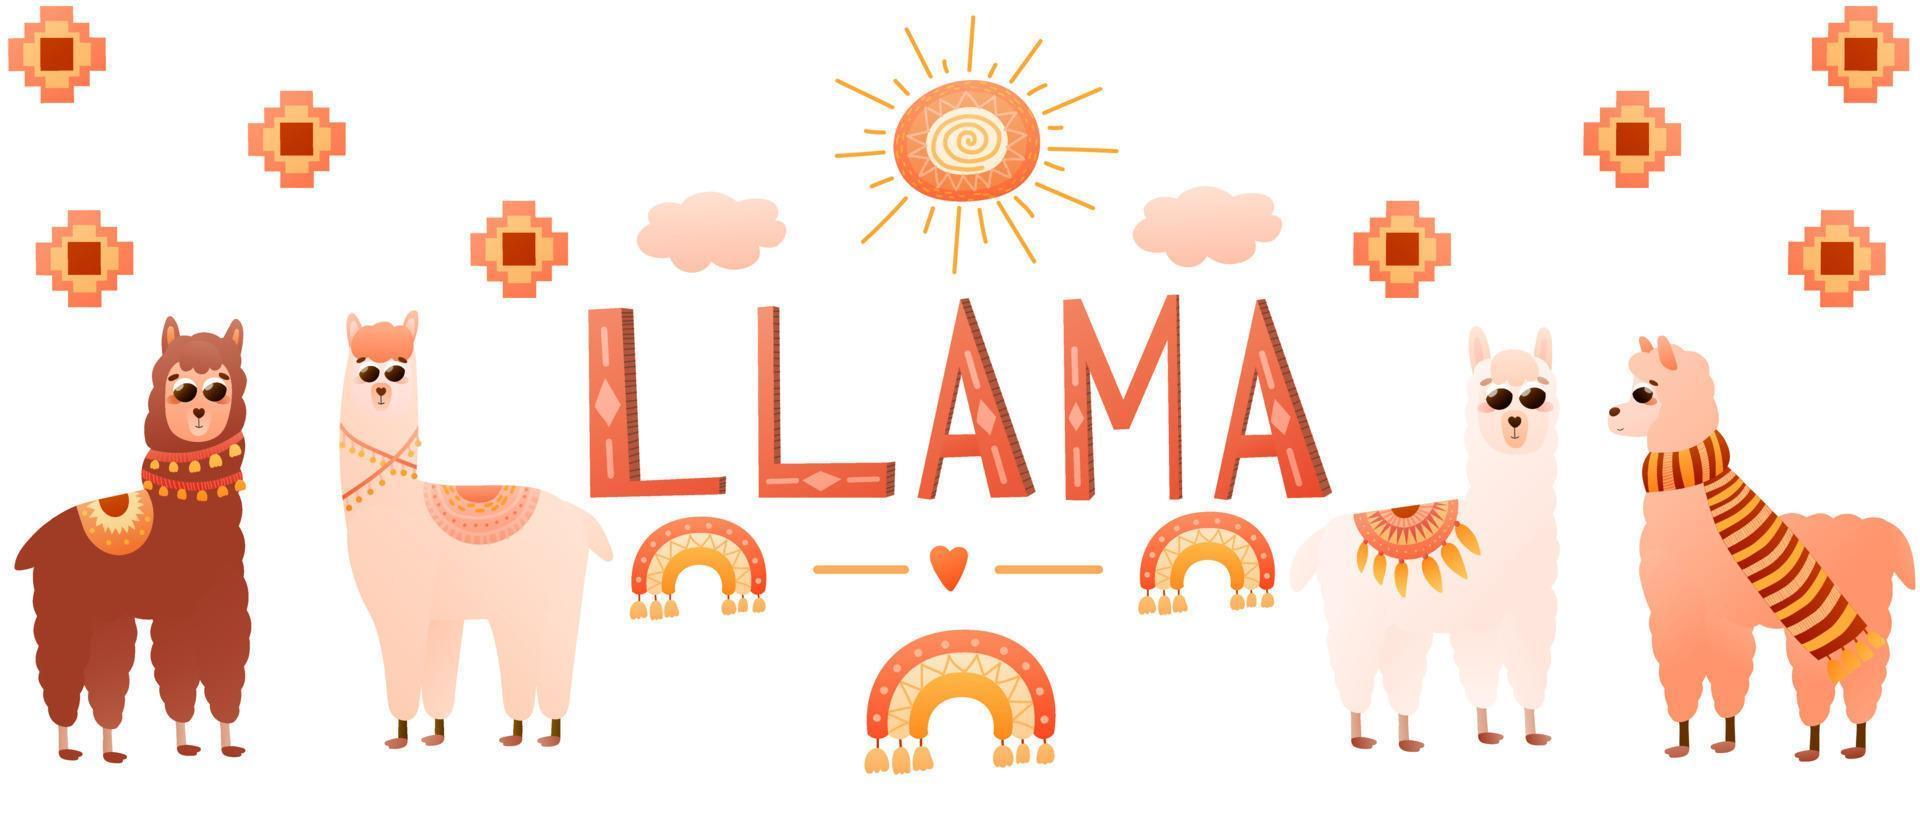 banner web de alpacas com elementos de lhama e peru de personagens de animais de estilo cartoon, design de pôster colorido com ornamentado tribal em estilo escandinavo vetor